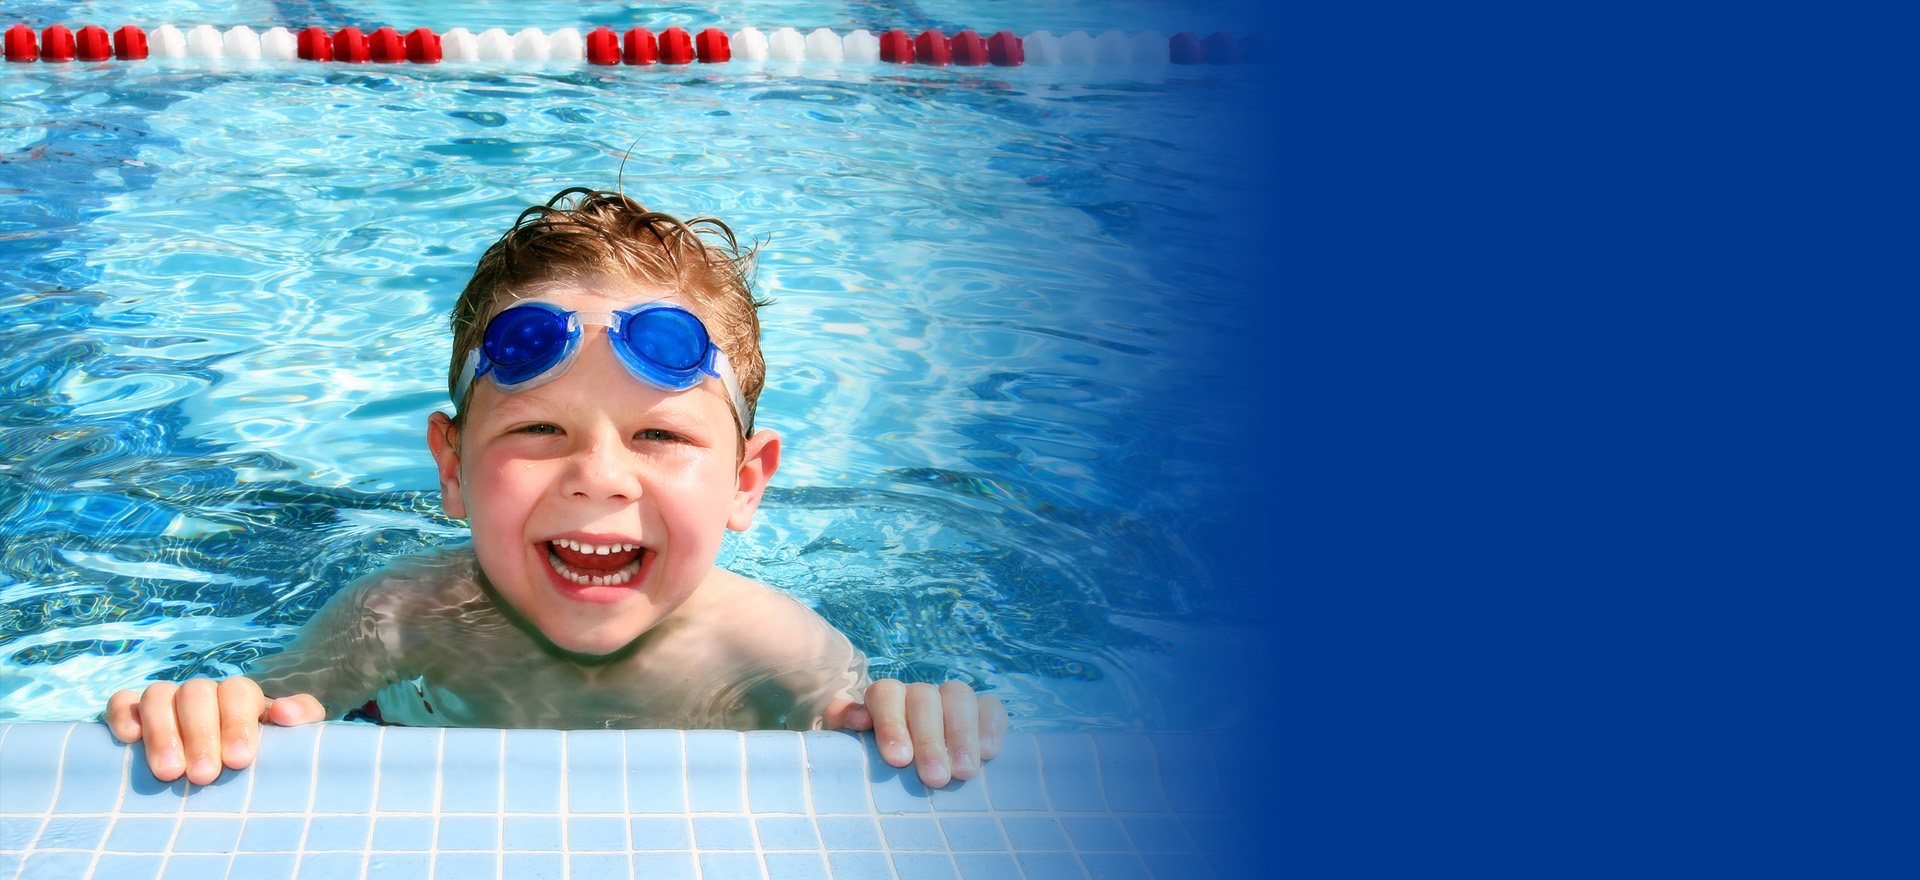 gyerek víz alatt úszik egy medencében